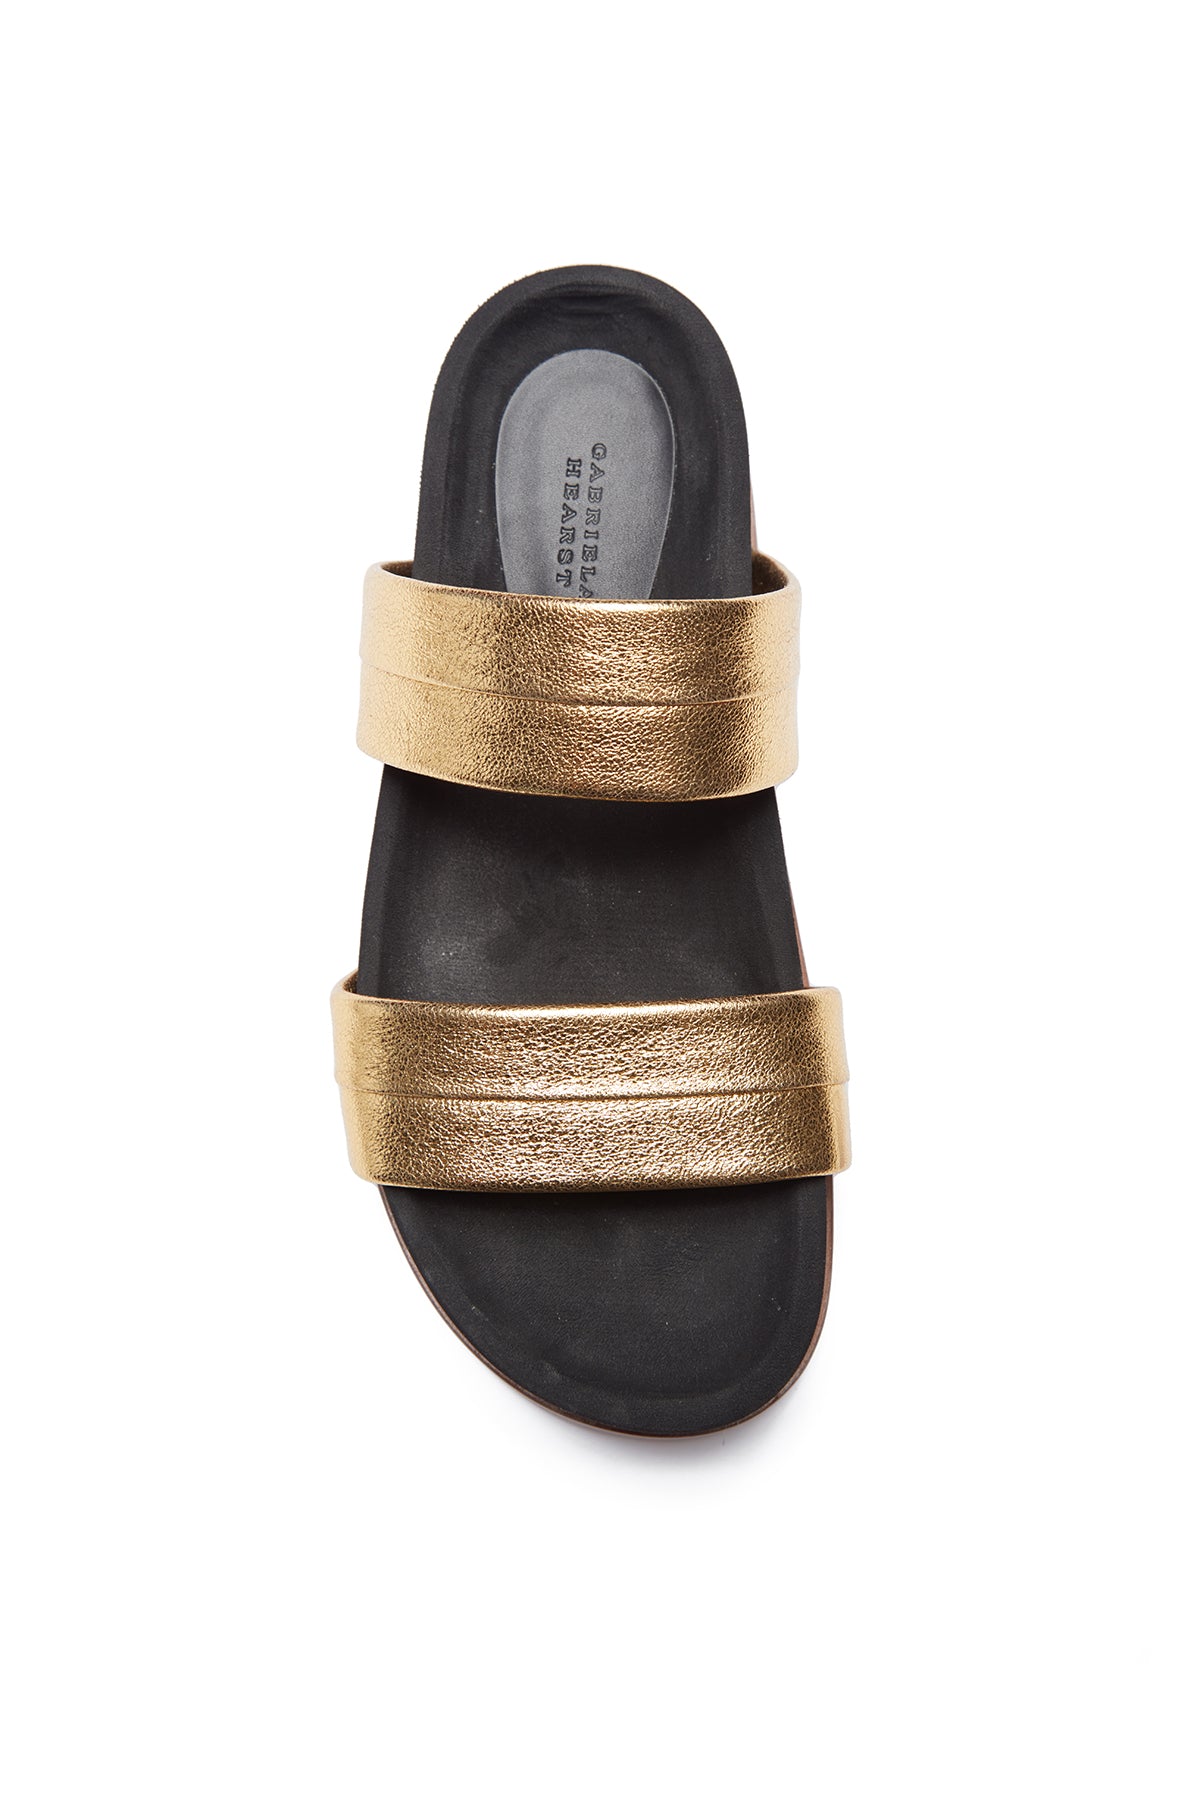 Striker Platform Sandal in Gold Leather